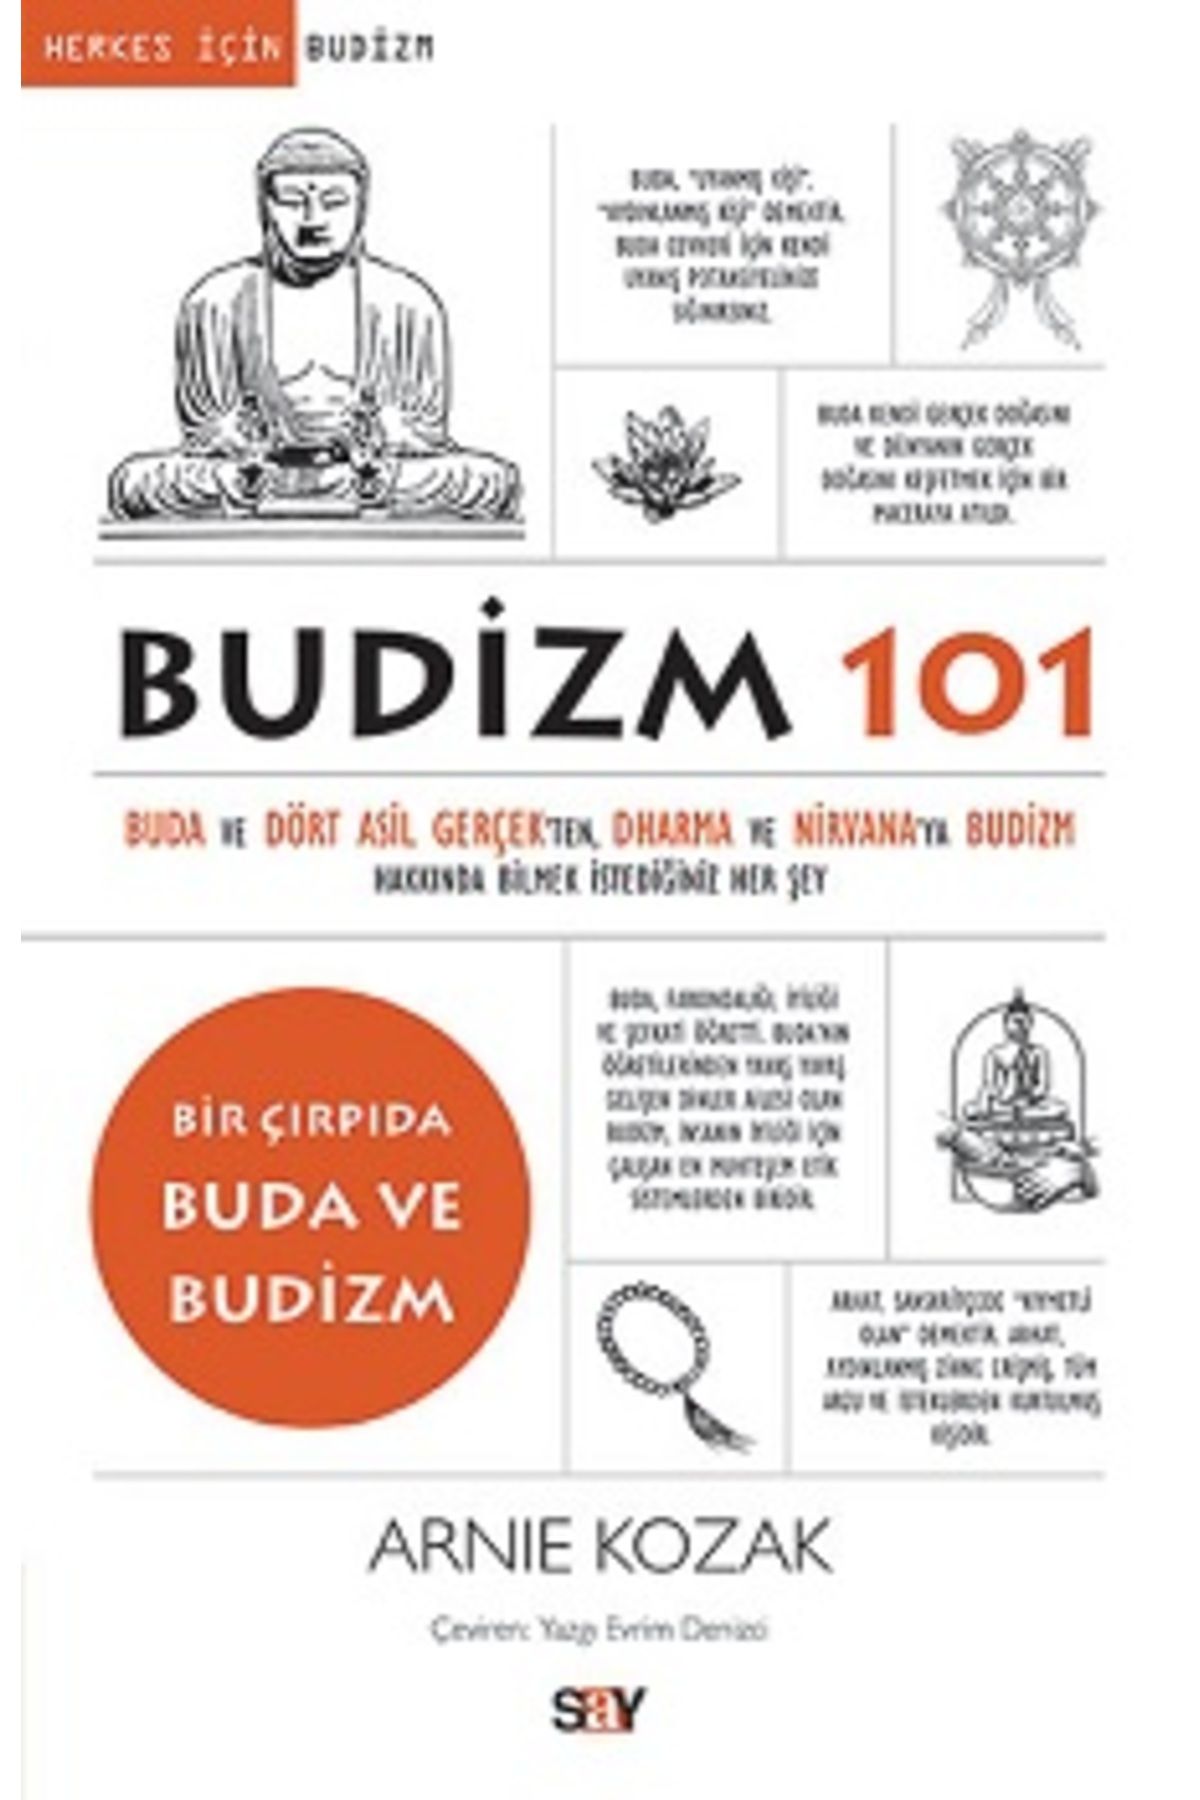 Say Yayınları Budizm 101